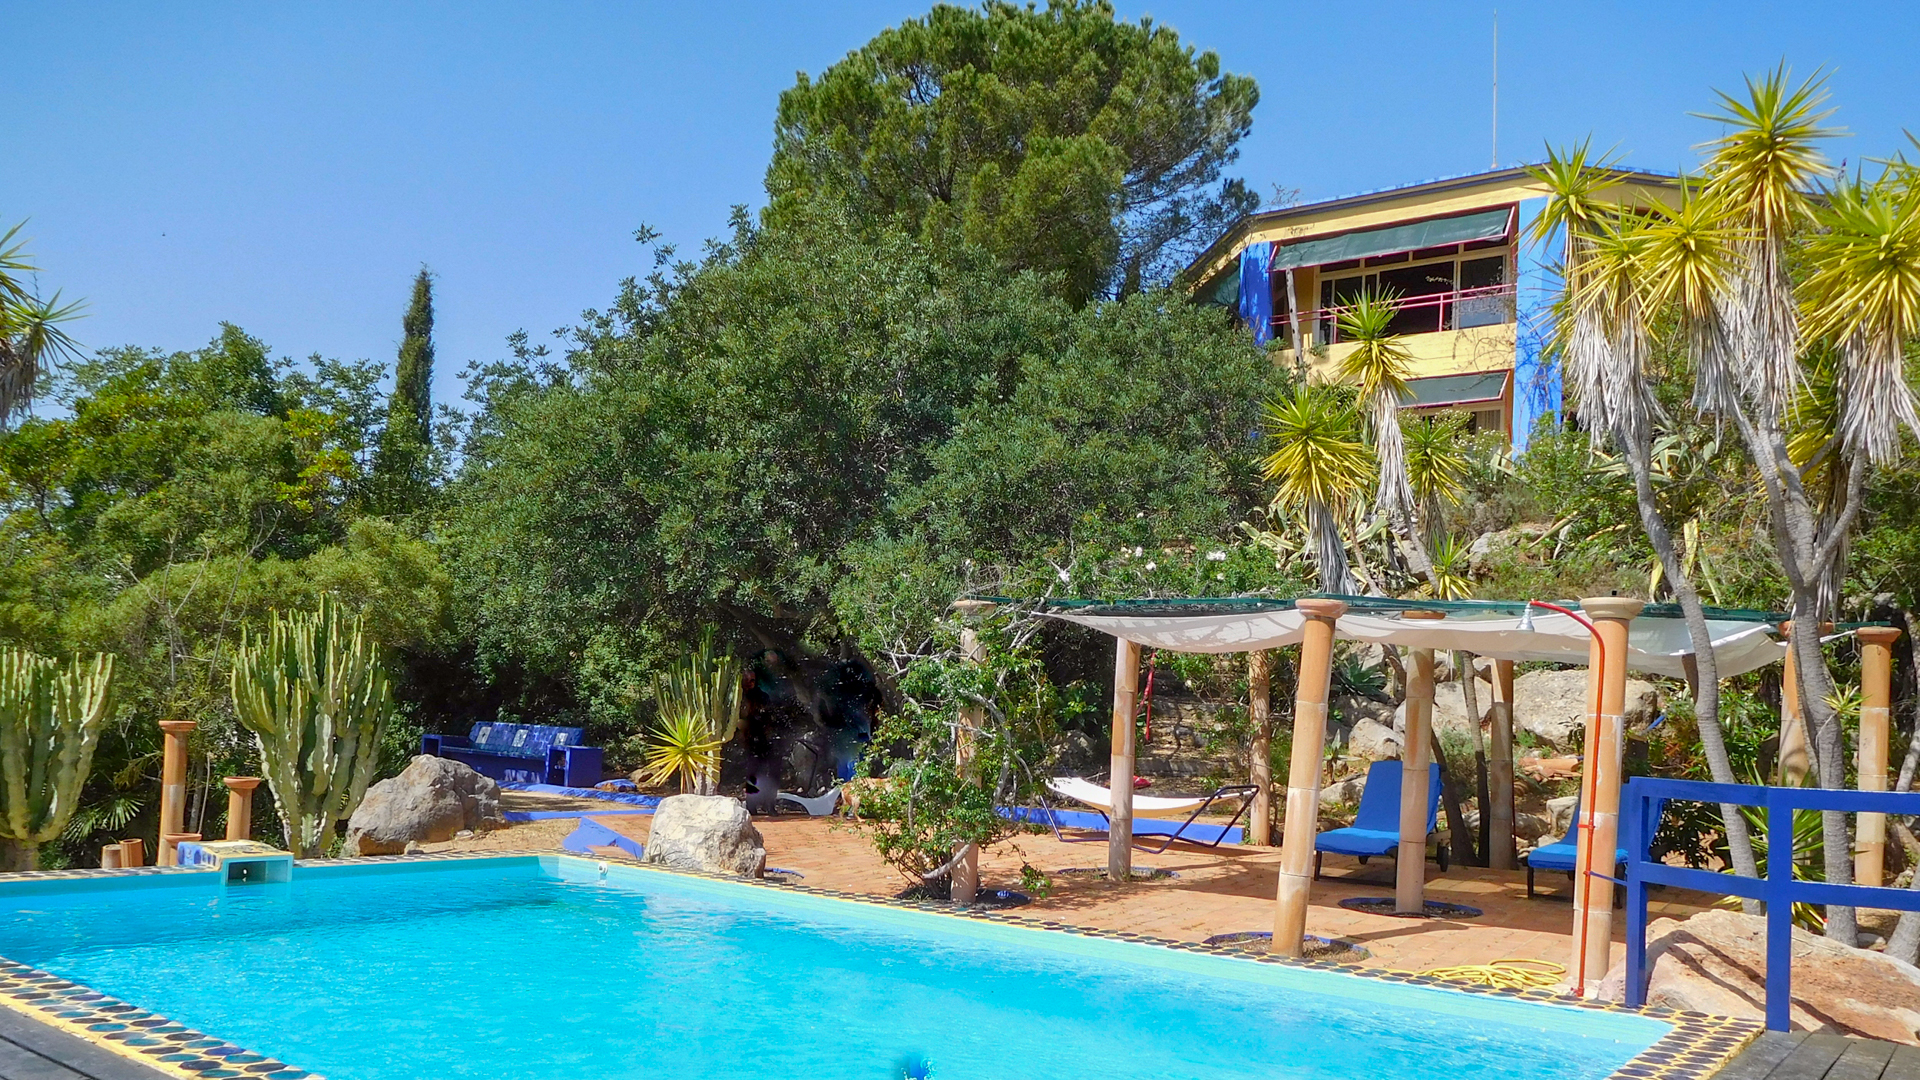 Potentiel fantastique pour un hôtel de charme ou un centre d'arts sur un grand domaine avec piscine, 3 cottages et vue sur la mer, près de Tavira | TV867 